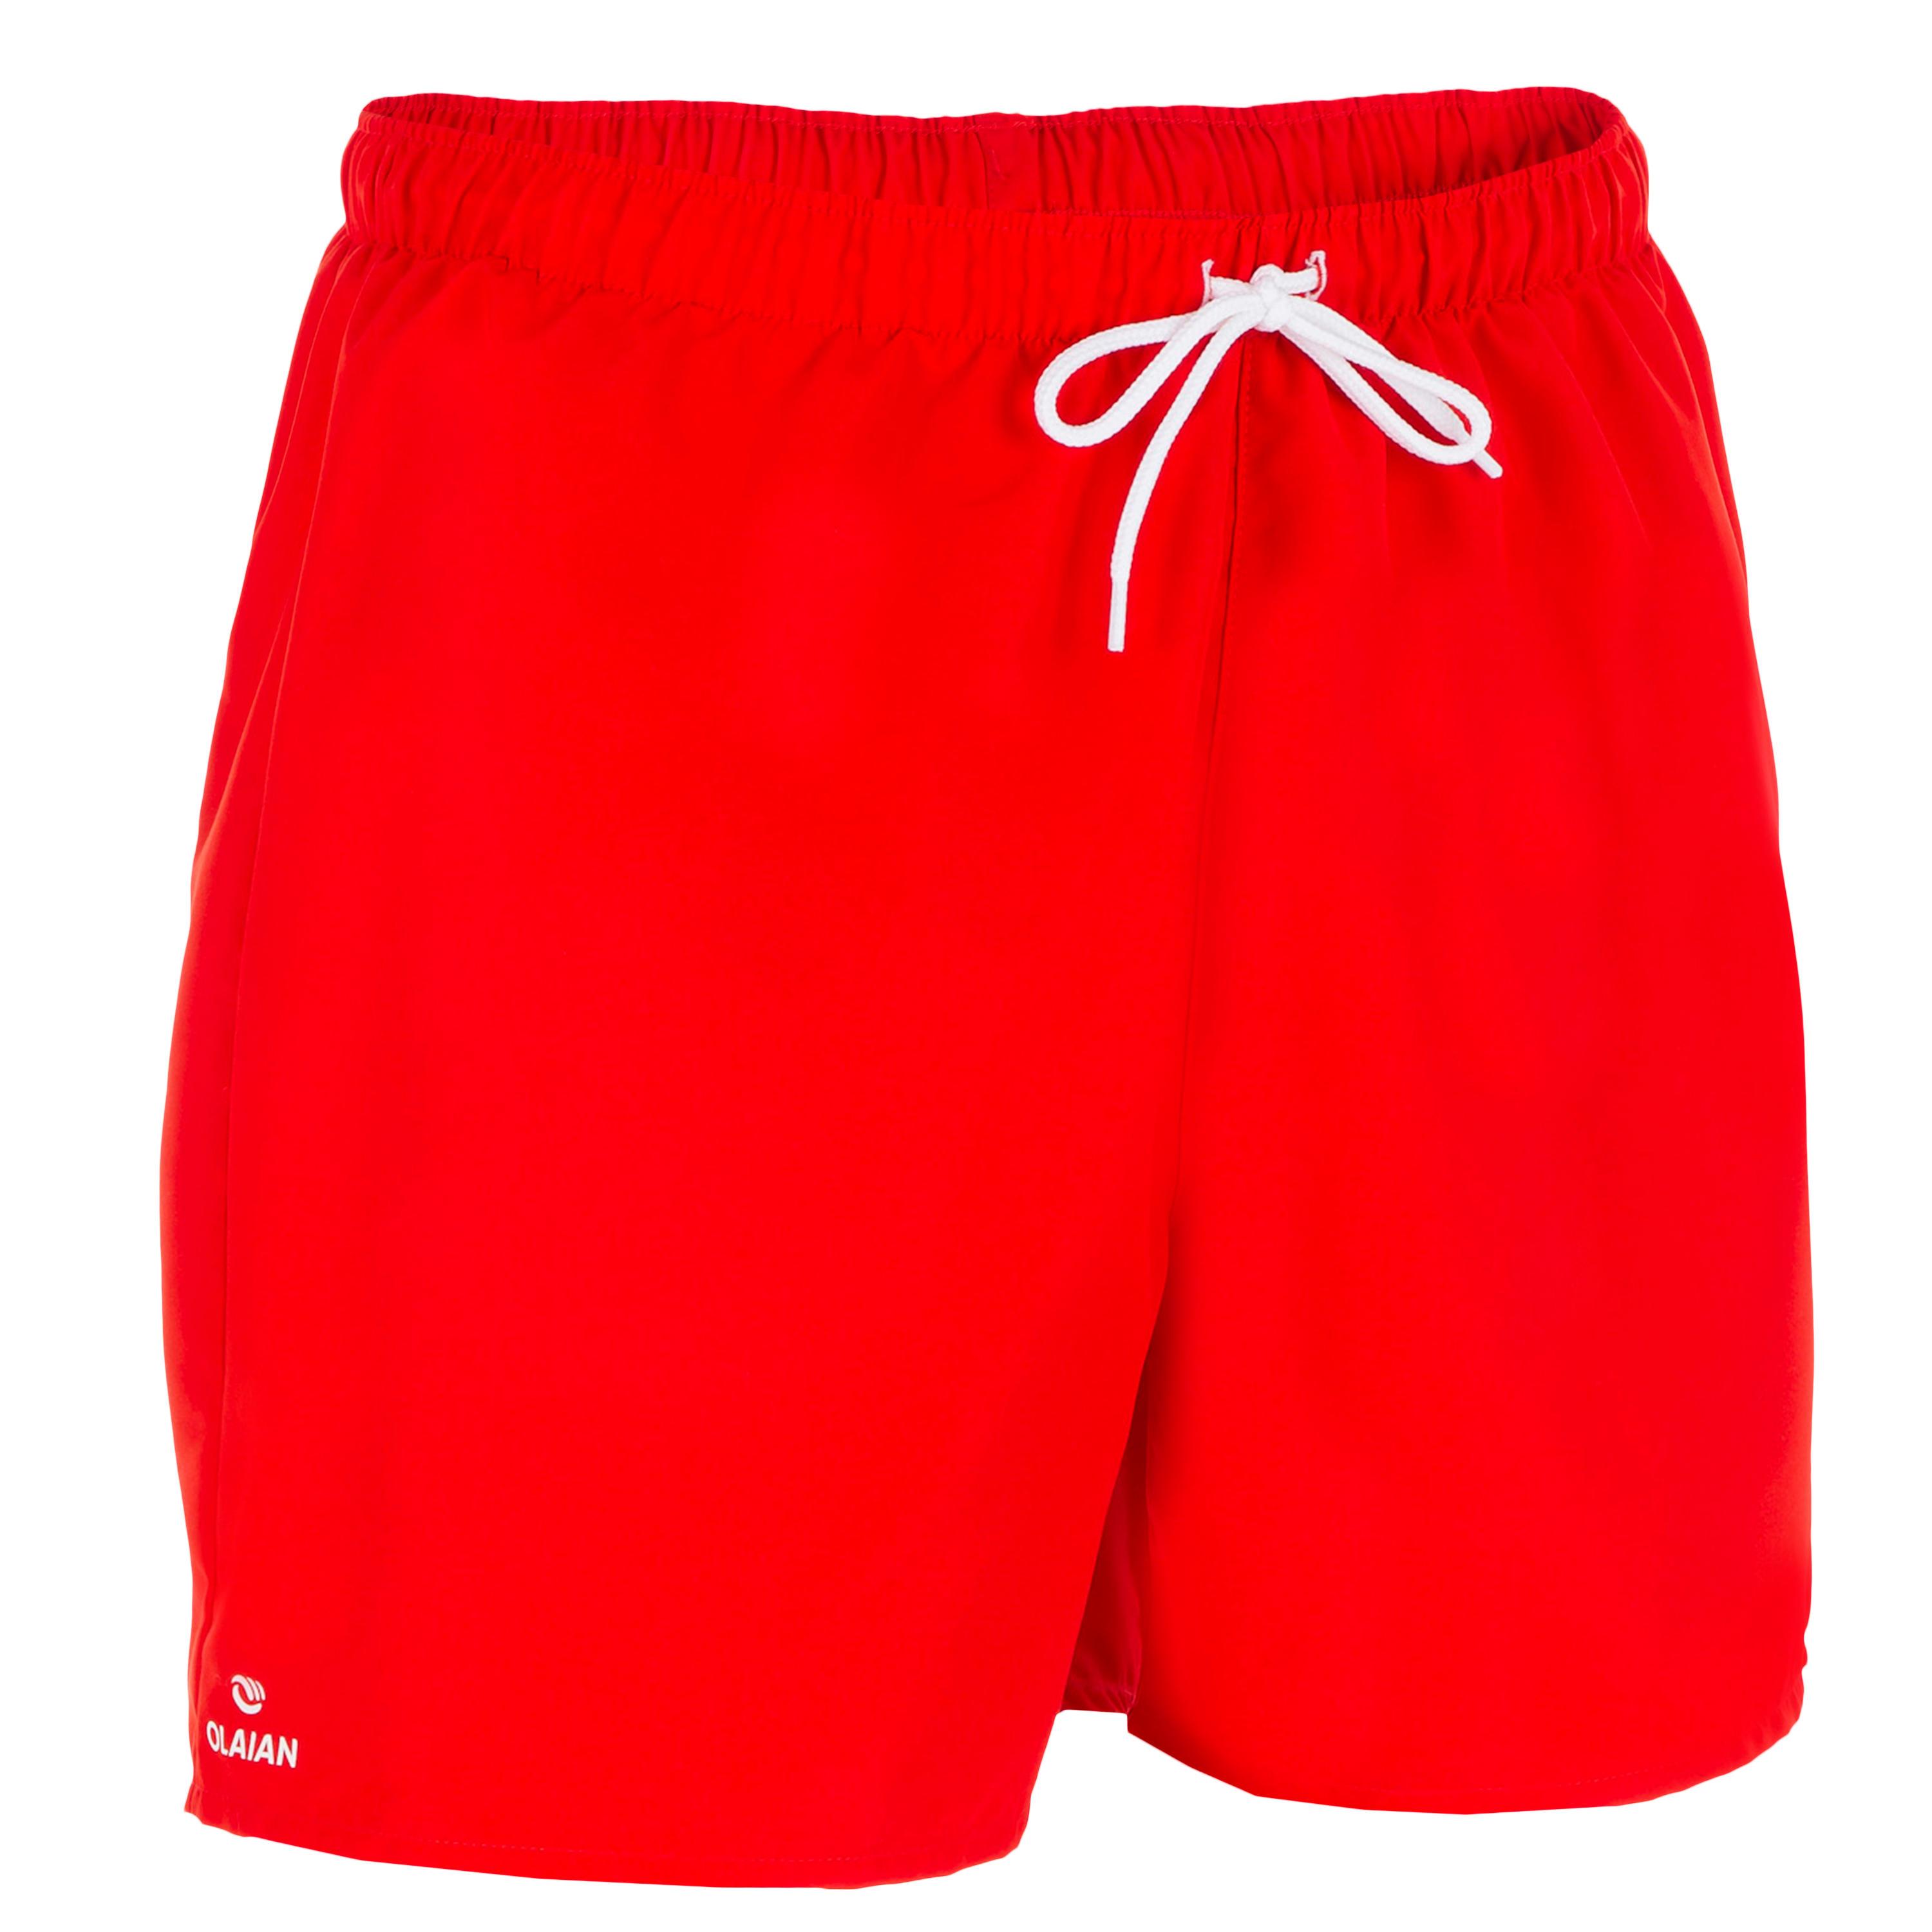 [ด่วน!! โปรโมชั่นมีจำนวนจำกัด] กางเกงชายหาดขาสั้นรุ่น HENDAIA (สีแดง NT RED) สำหรับ สกิมบอร์ด บอดี้บอร์ด กระดานโต้คลื่น